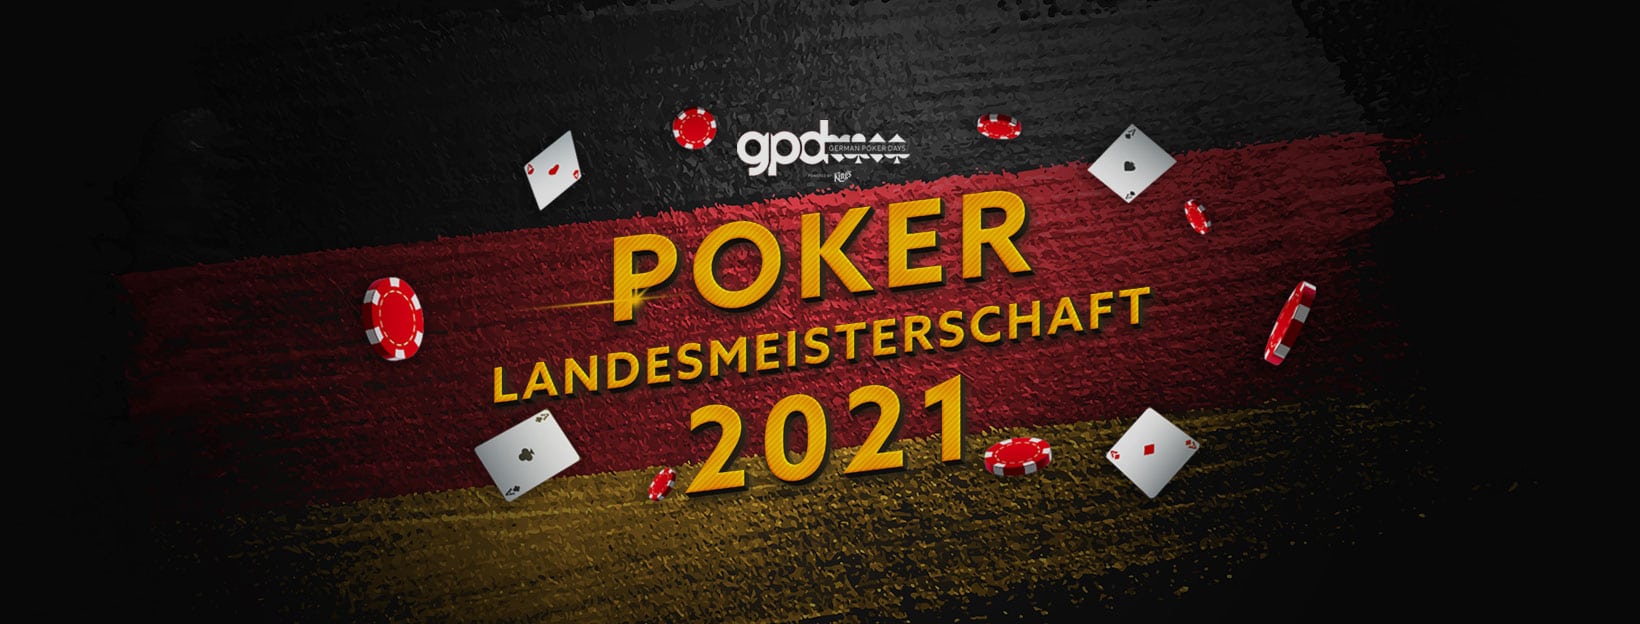 Poker Landesmeisterschaft 2021 Berlin